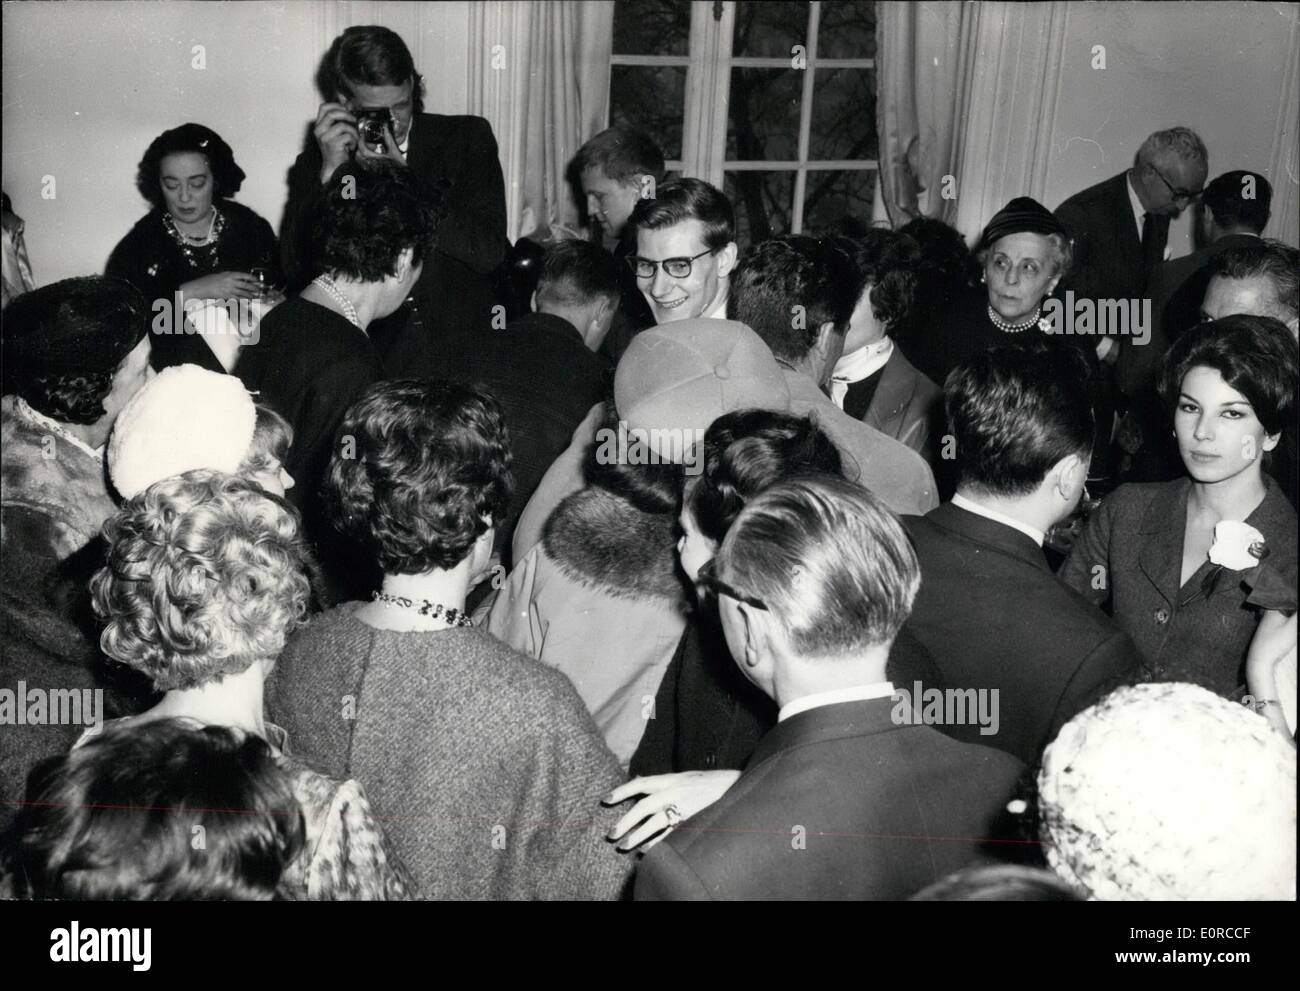 Gen 01, 1959 - Parigi moda Aperture: Yves Saint Laurent ha presentato la sua nuova collezione di Dior stamattina. Come i precedenti, questa collezione ha avuto molto successo. La foto mostra Yves Saint Laurent intervistato da una Radio Reporter. Foto Stock